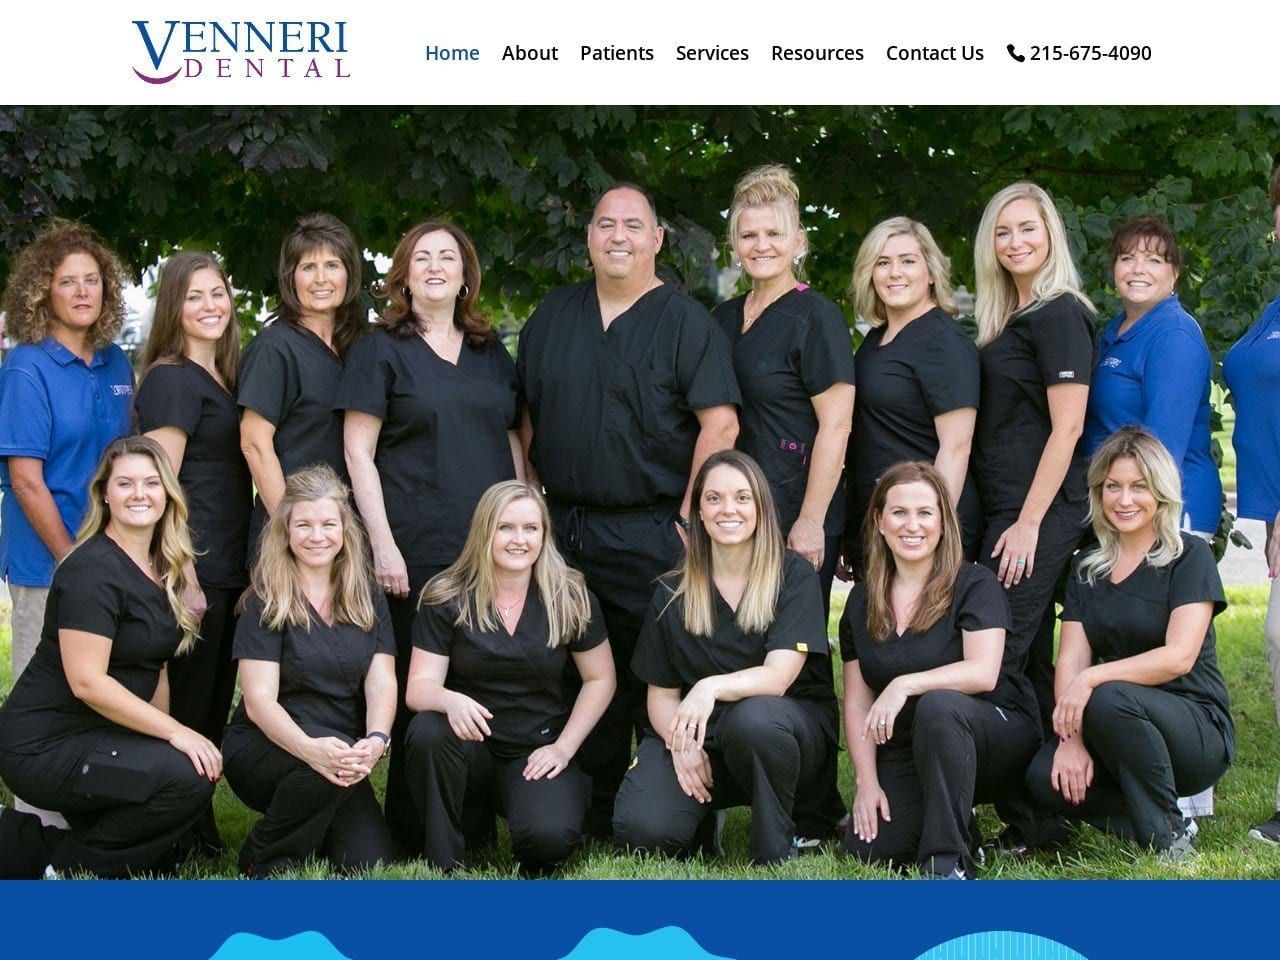 Venneri Dental Website Screenshot from venneridental.com